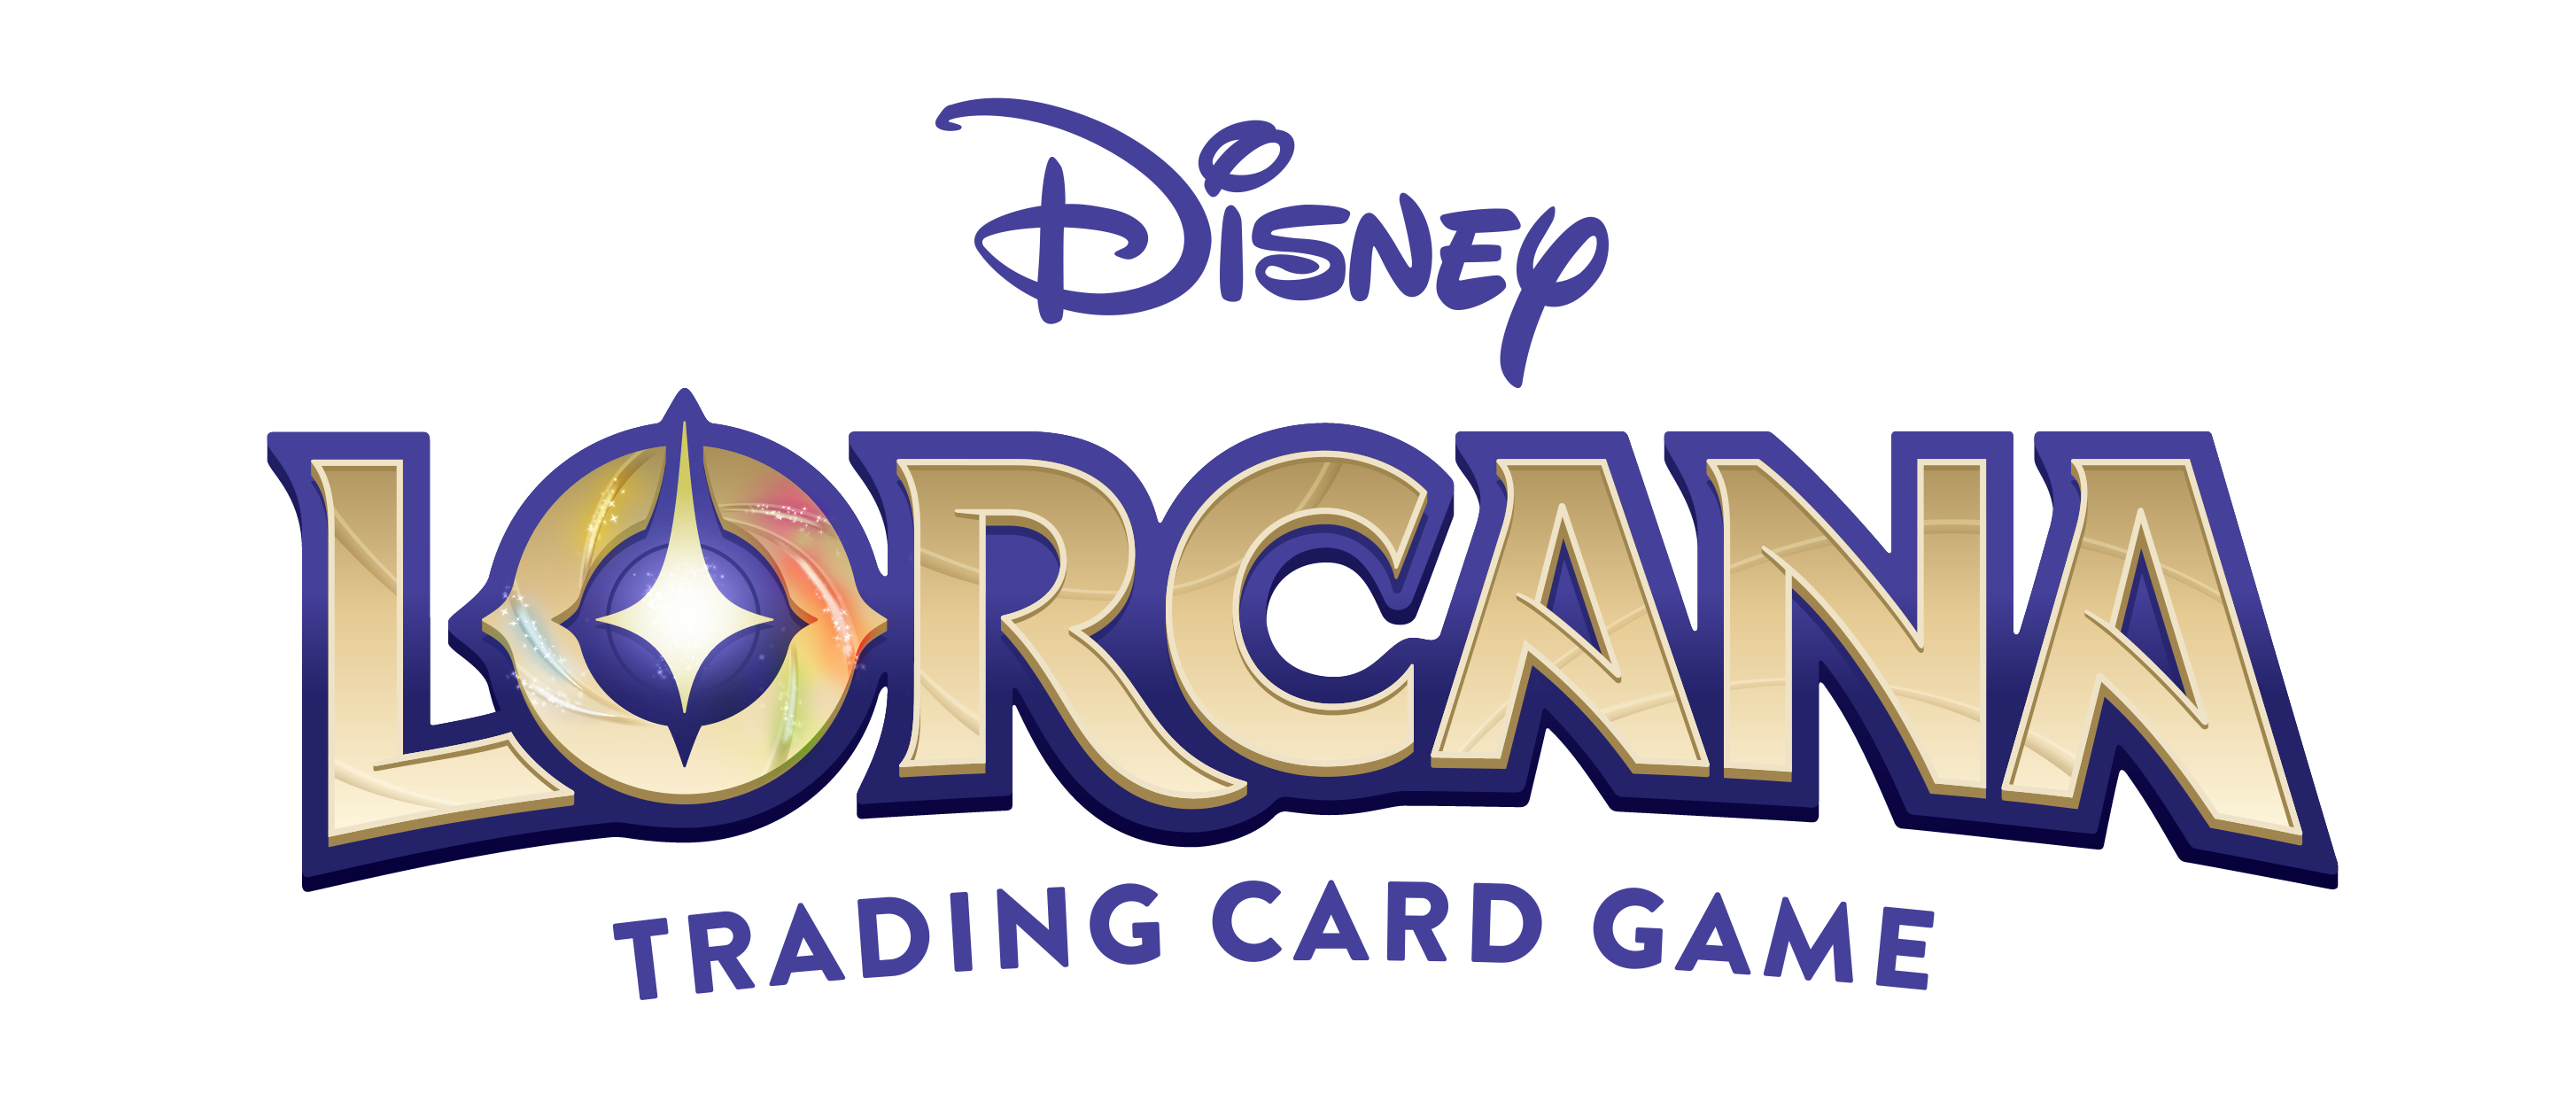 Disney Lorcana, productos sellado y cartas sueltas de Disney Lorcana